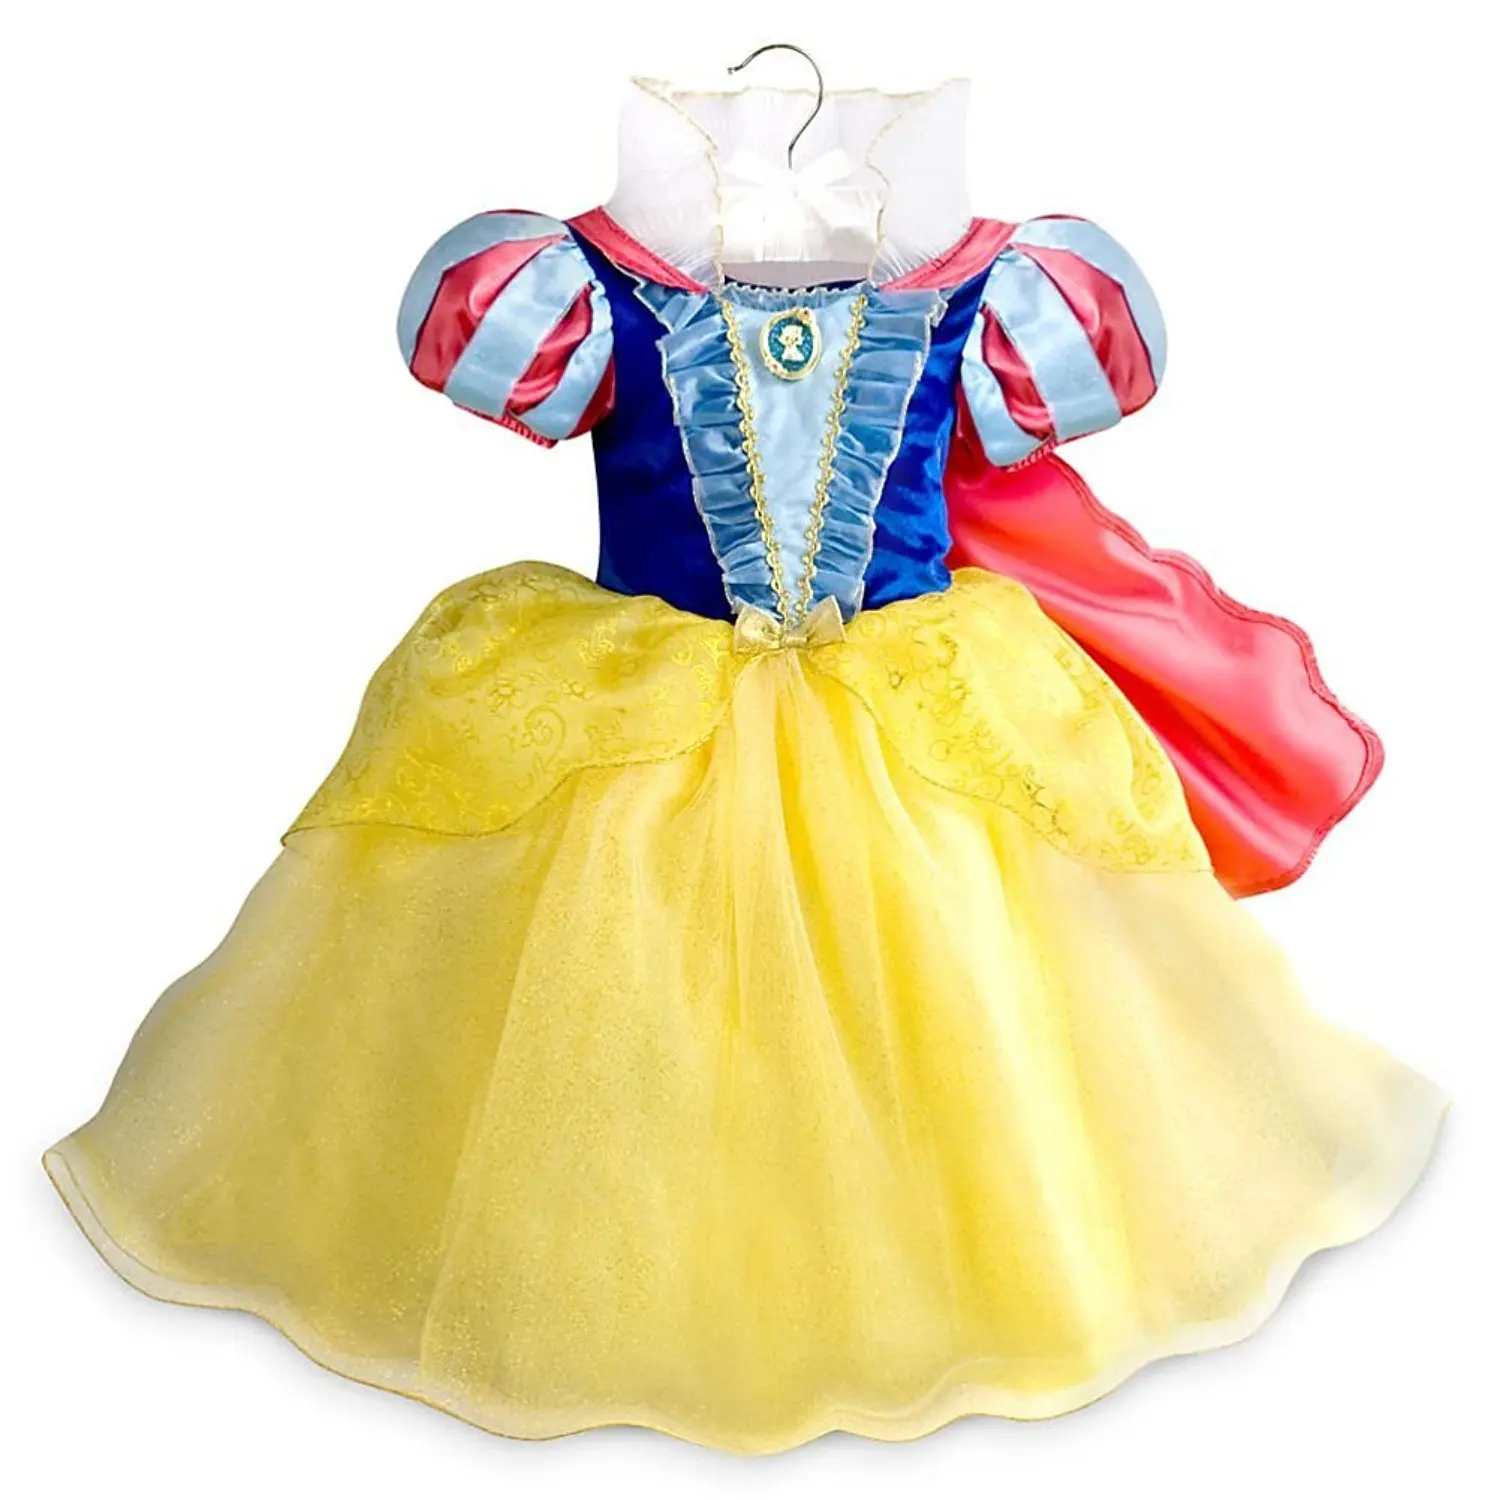 disney shop princess dresses